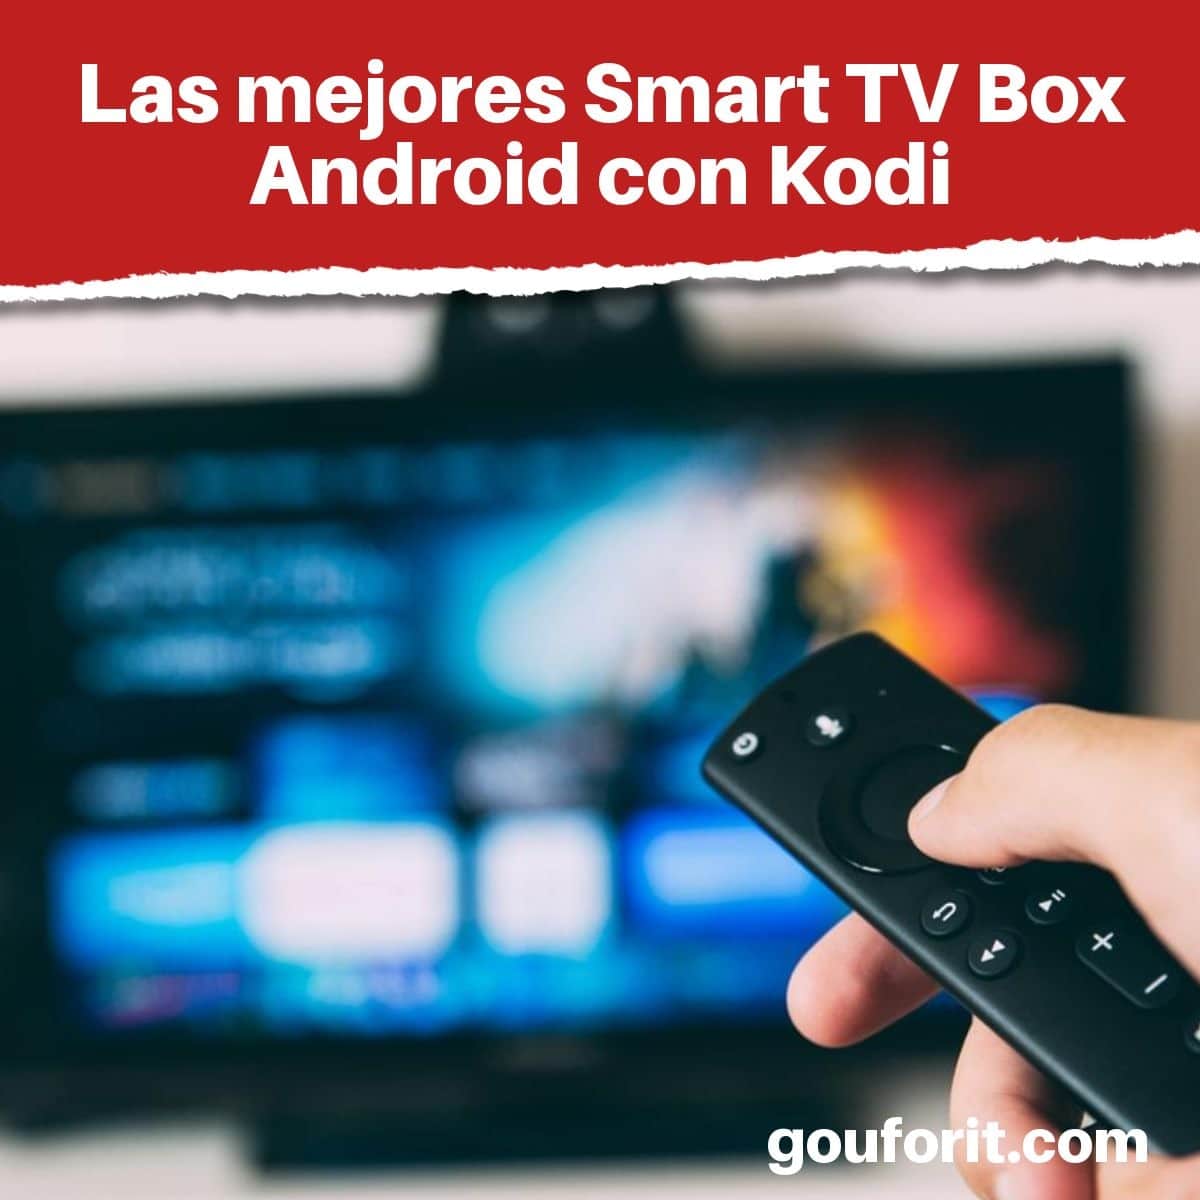 Las mejores Android Kodi Top opciones Android TV que